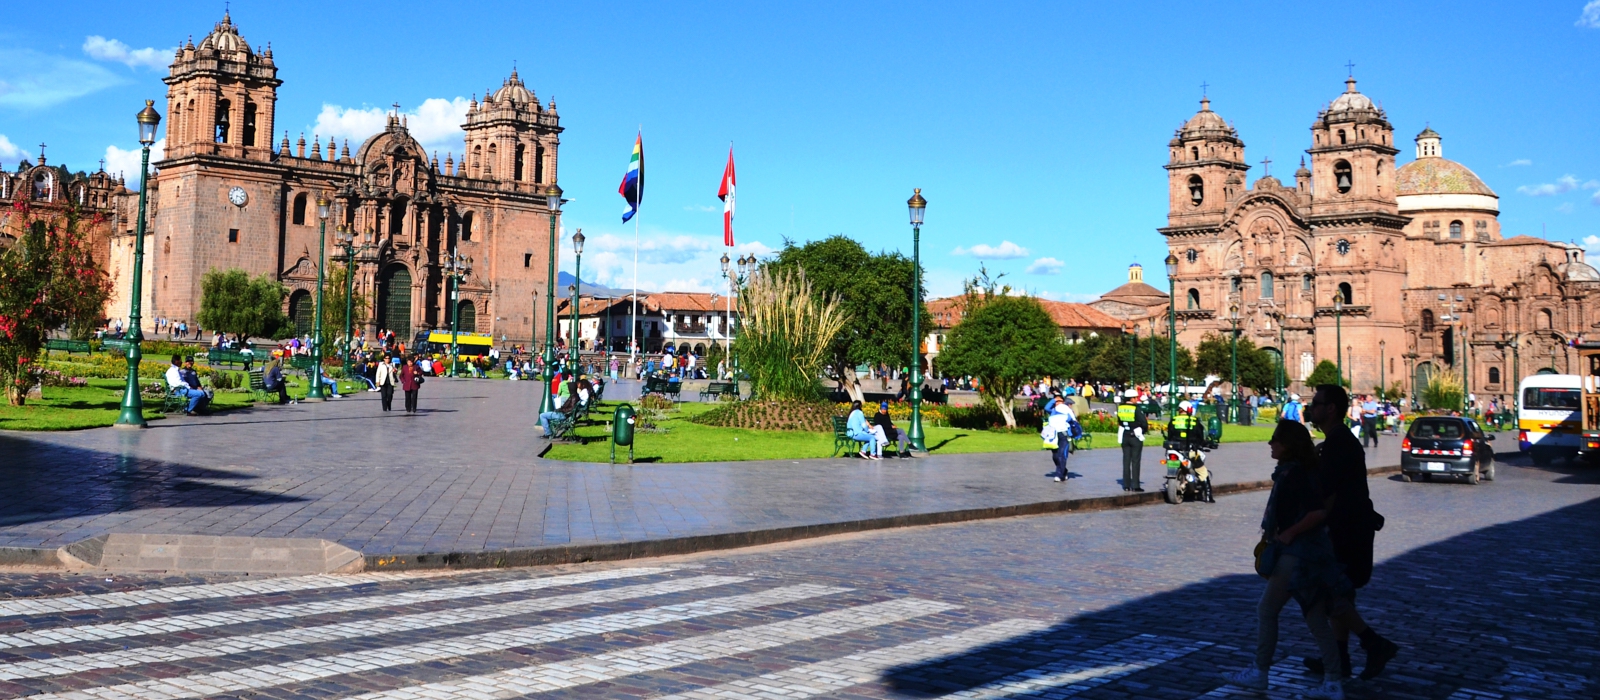 7 Day – Classic Peru trip: Lima, Cusco & Machu Picchu